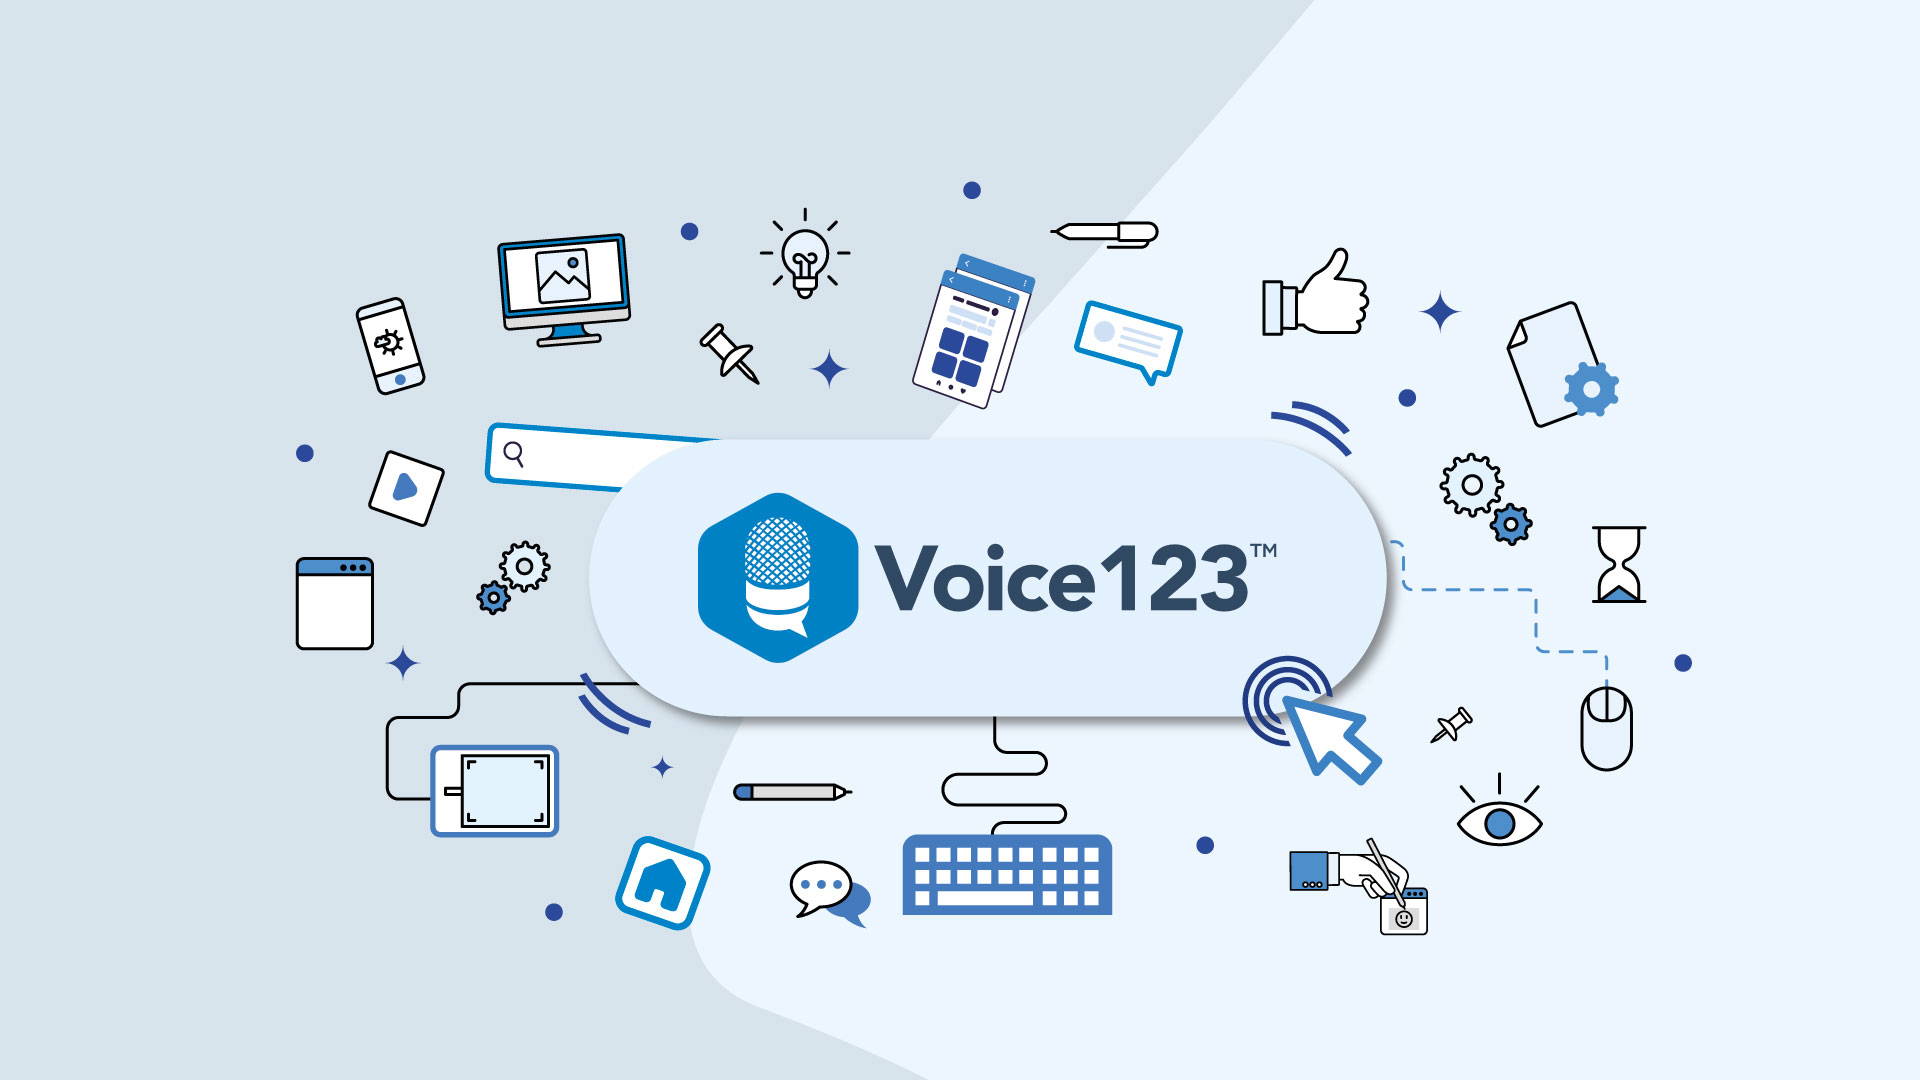 Voice123 platform education